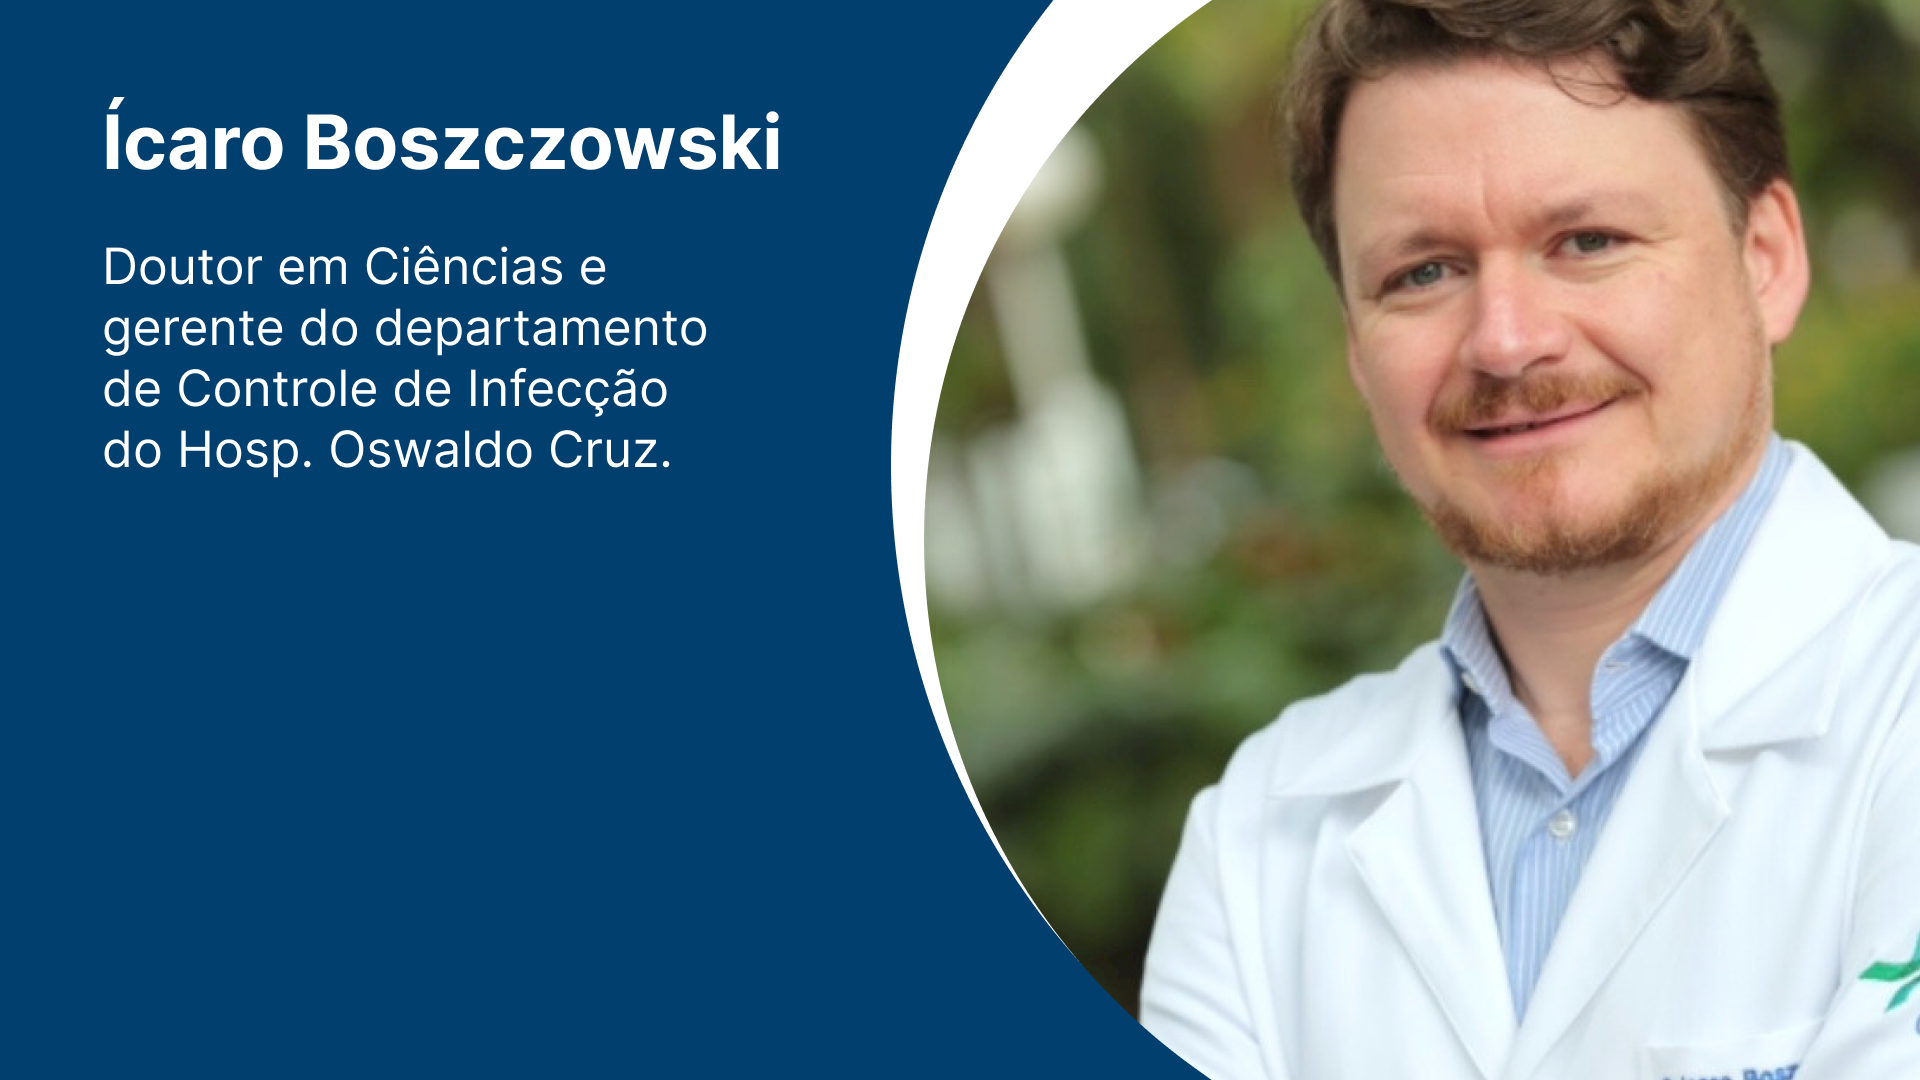 Educação Médica - Dr. Ícaro Boszczowski